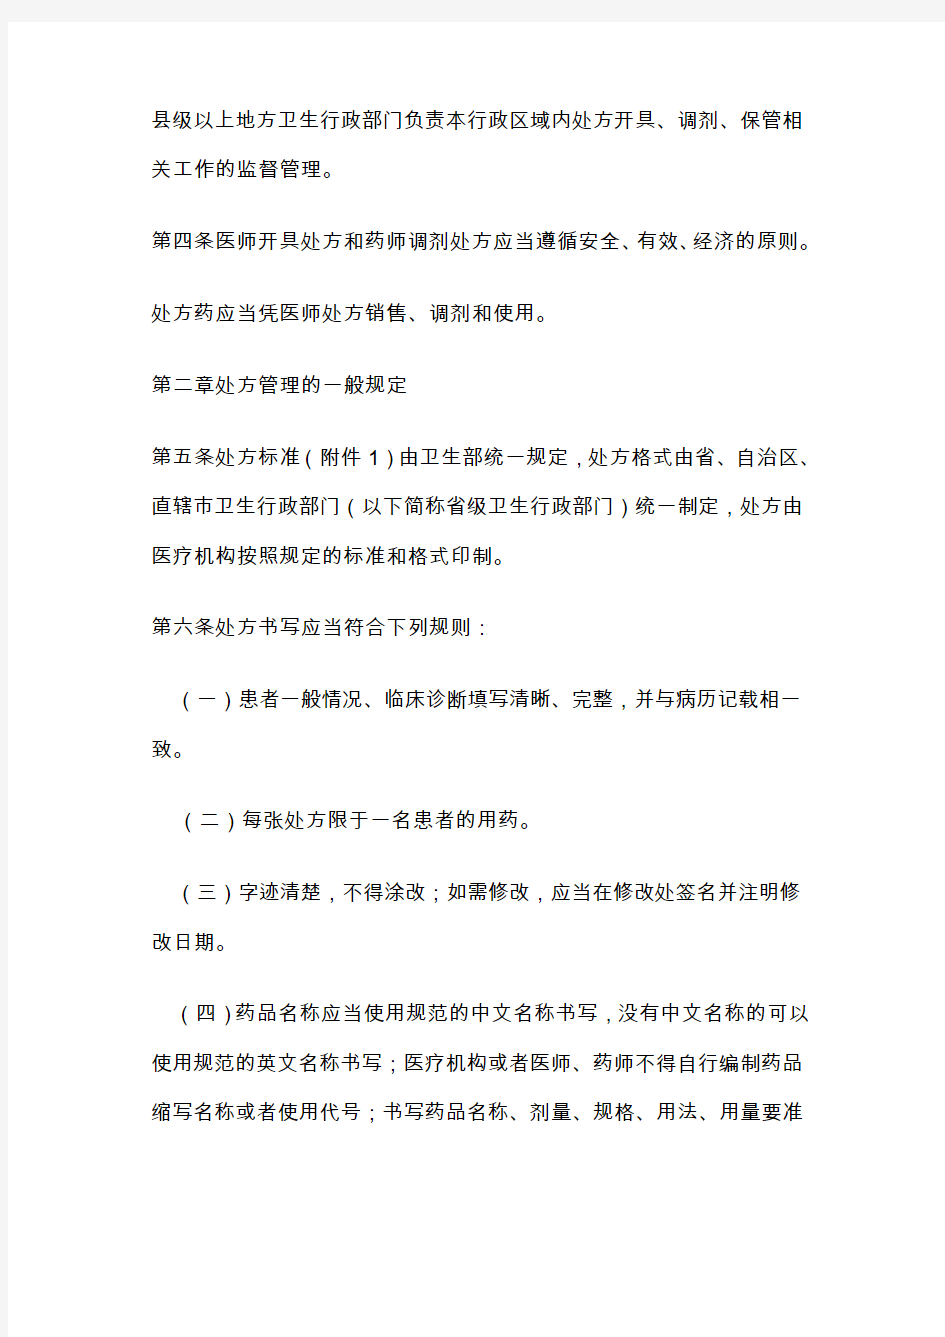 中华人民共和国卫生部令处方管理办法